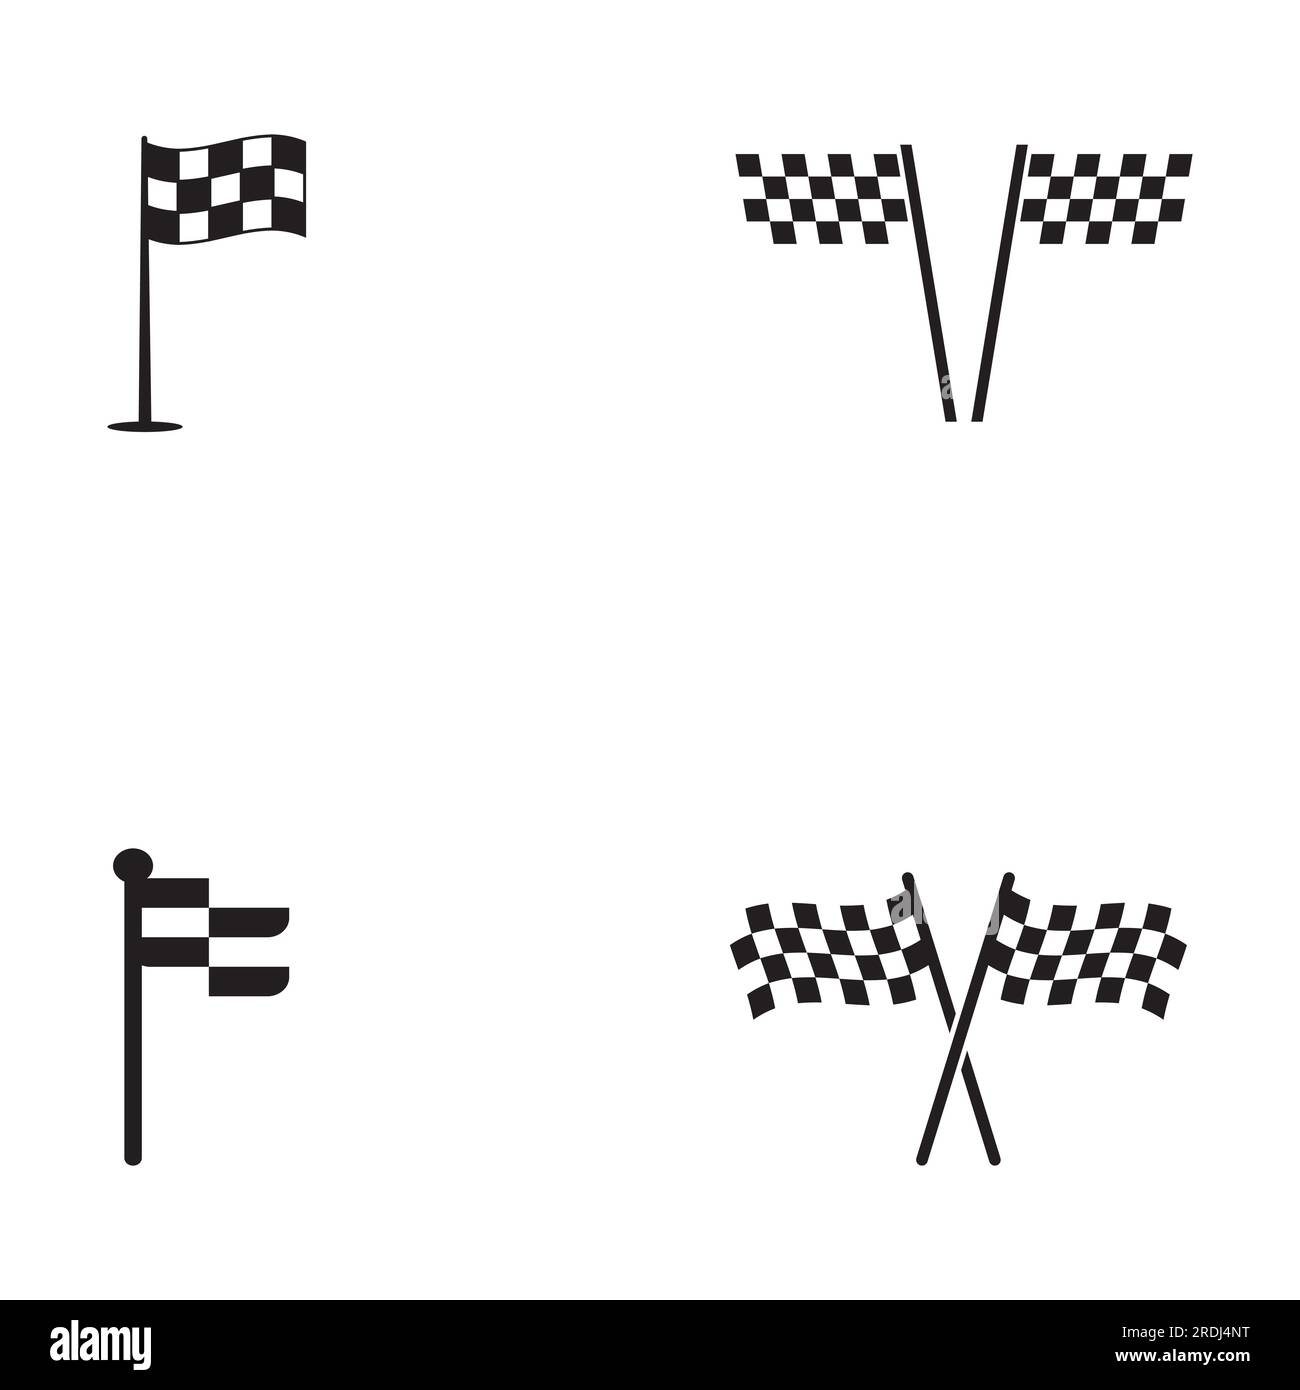 L'icône du drapeau de course, simple vecteur illustration design Illustration de Vecteur